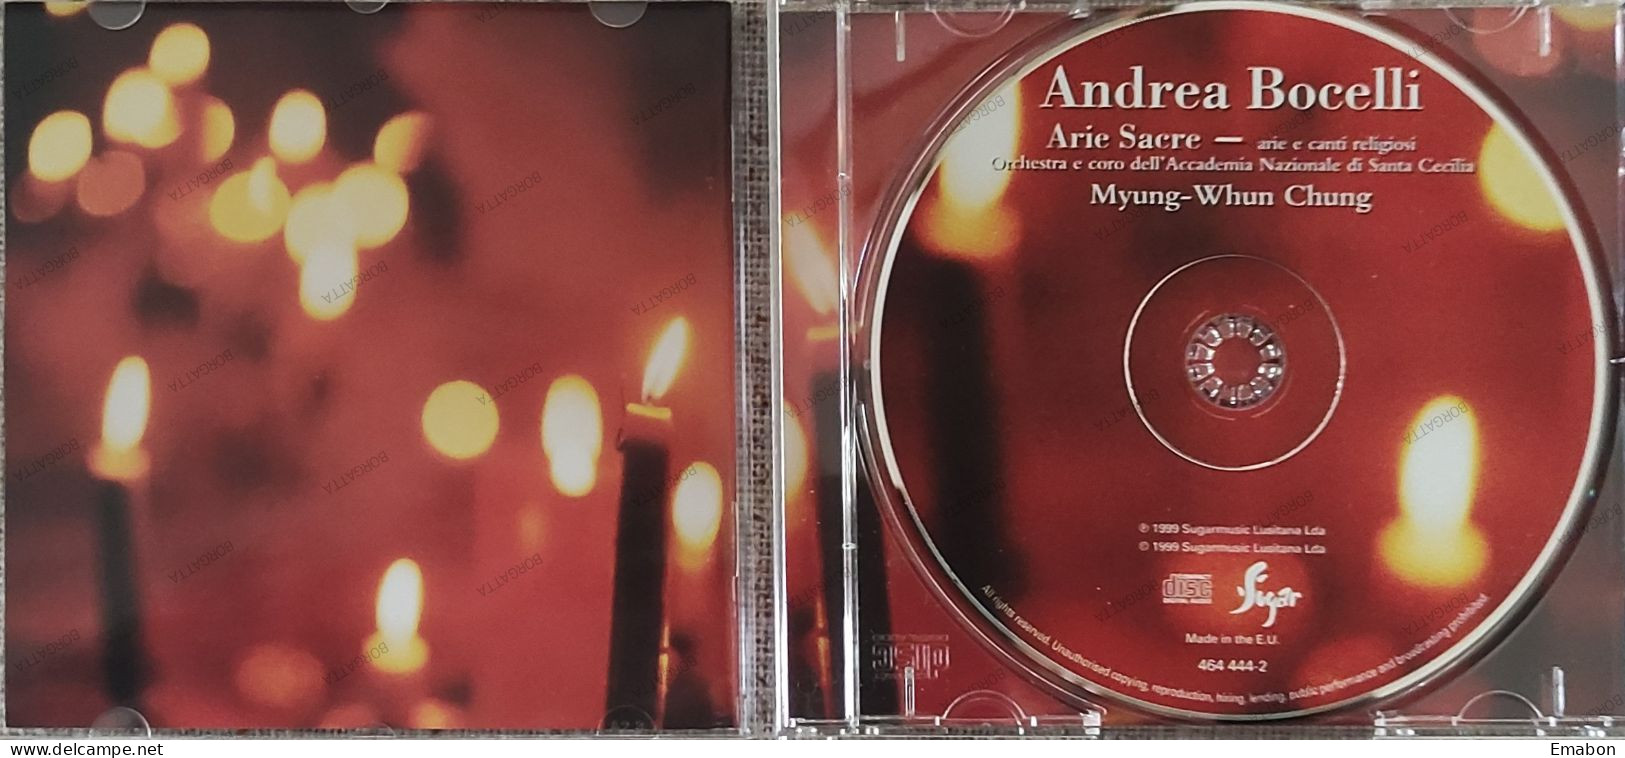 BORGATTA - ITALIANA Cd  ANDREA BOCELLI - ARIE SACRE - SUGARMUSIC 1999 -  USATO In Buono Stato - Altri - Musica Italiana